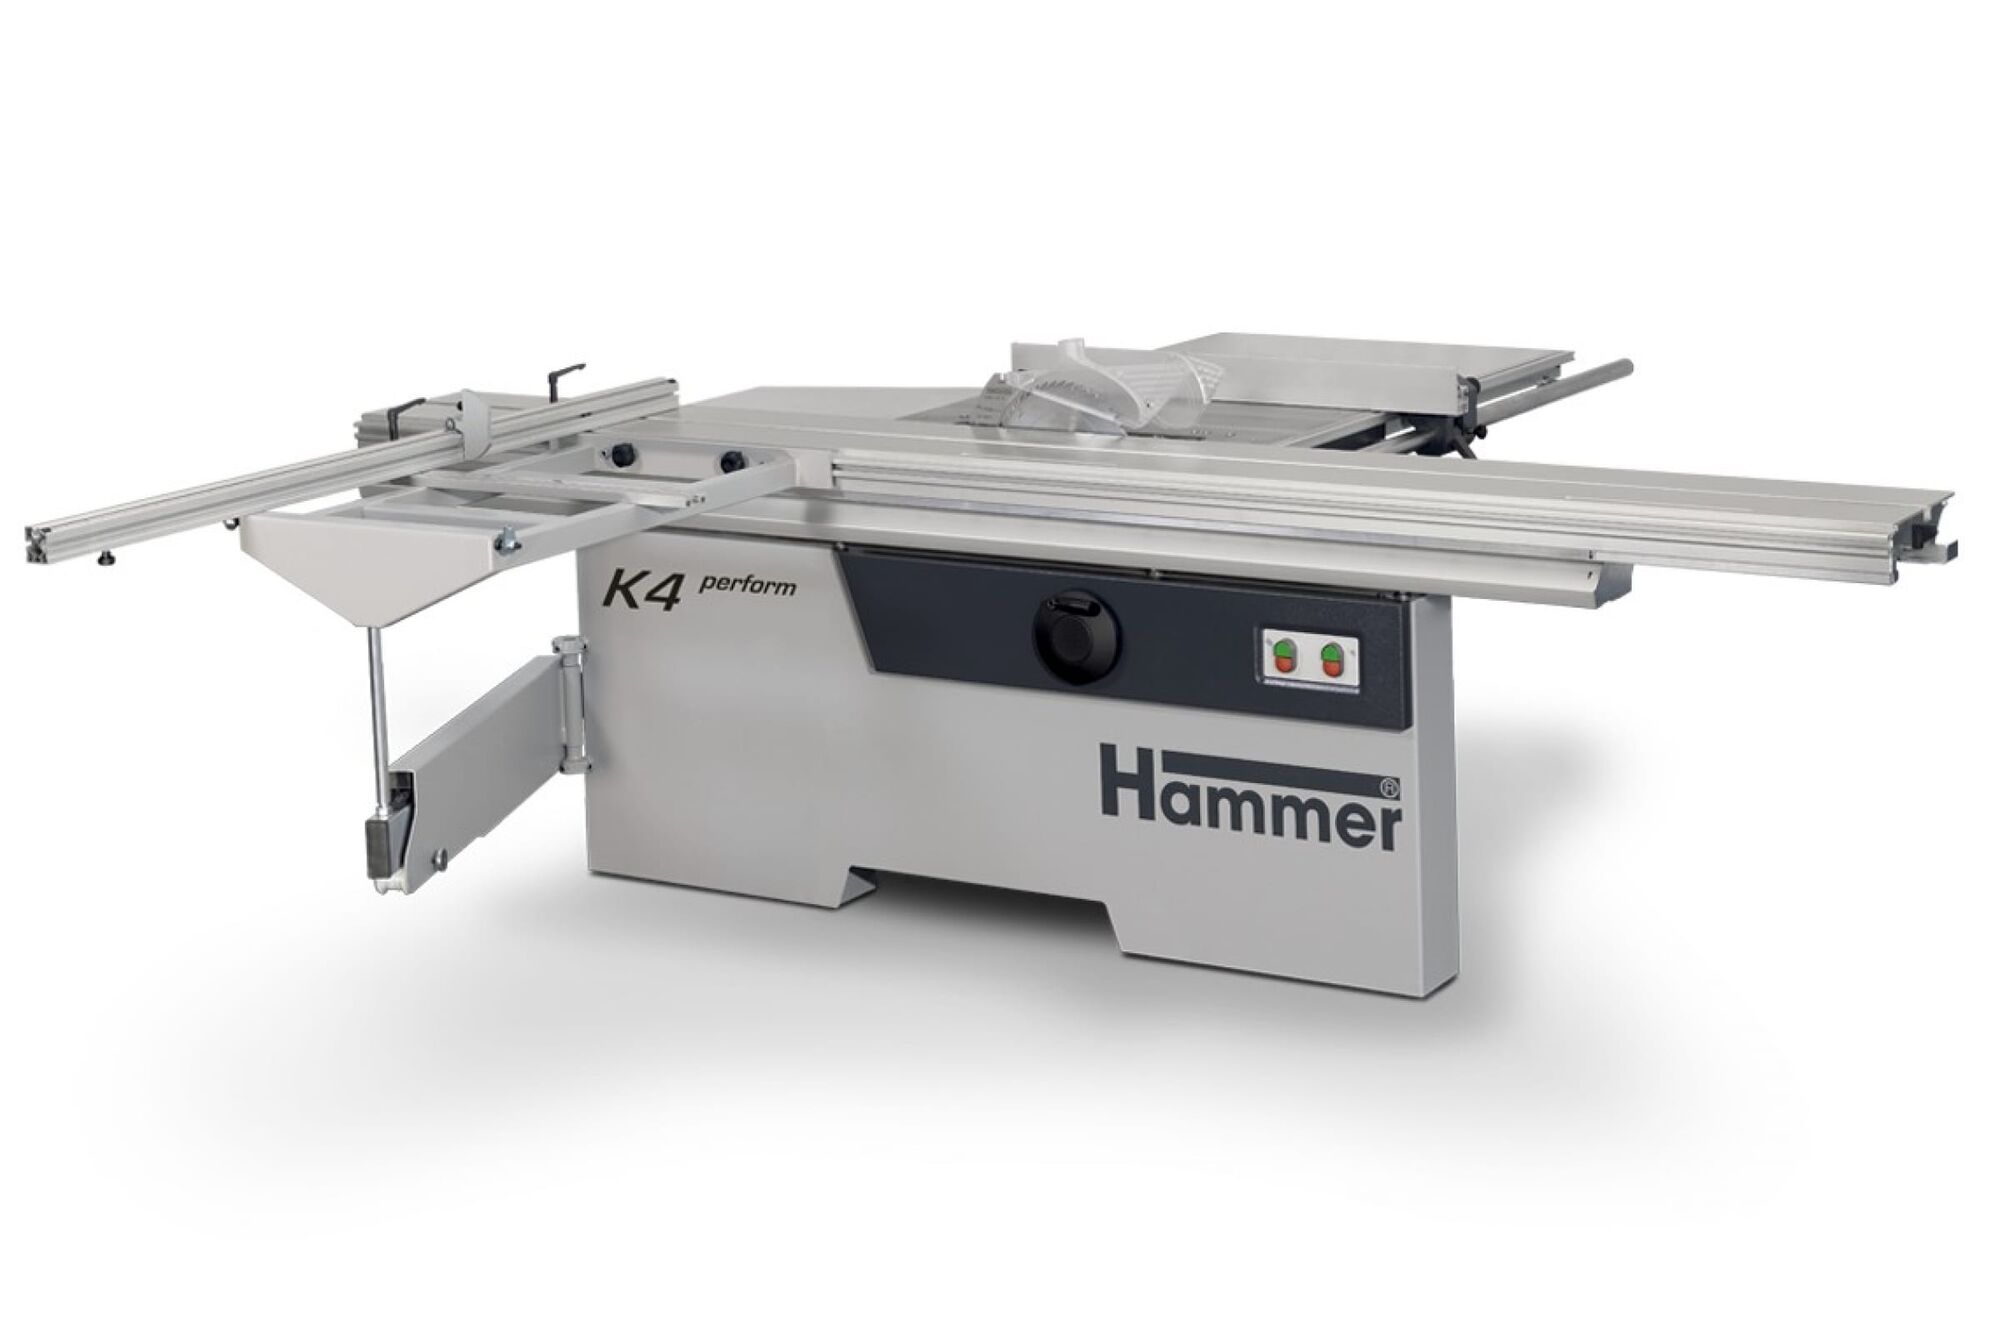 K k performance. Форматно-раскроечный станок Hammer k4. Hammer k3 Sliding Table saw. Hammer k3 perform. Hammer k 1255.